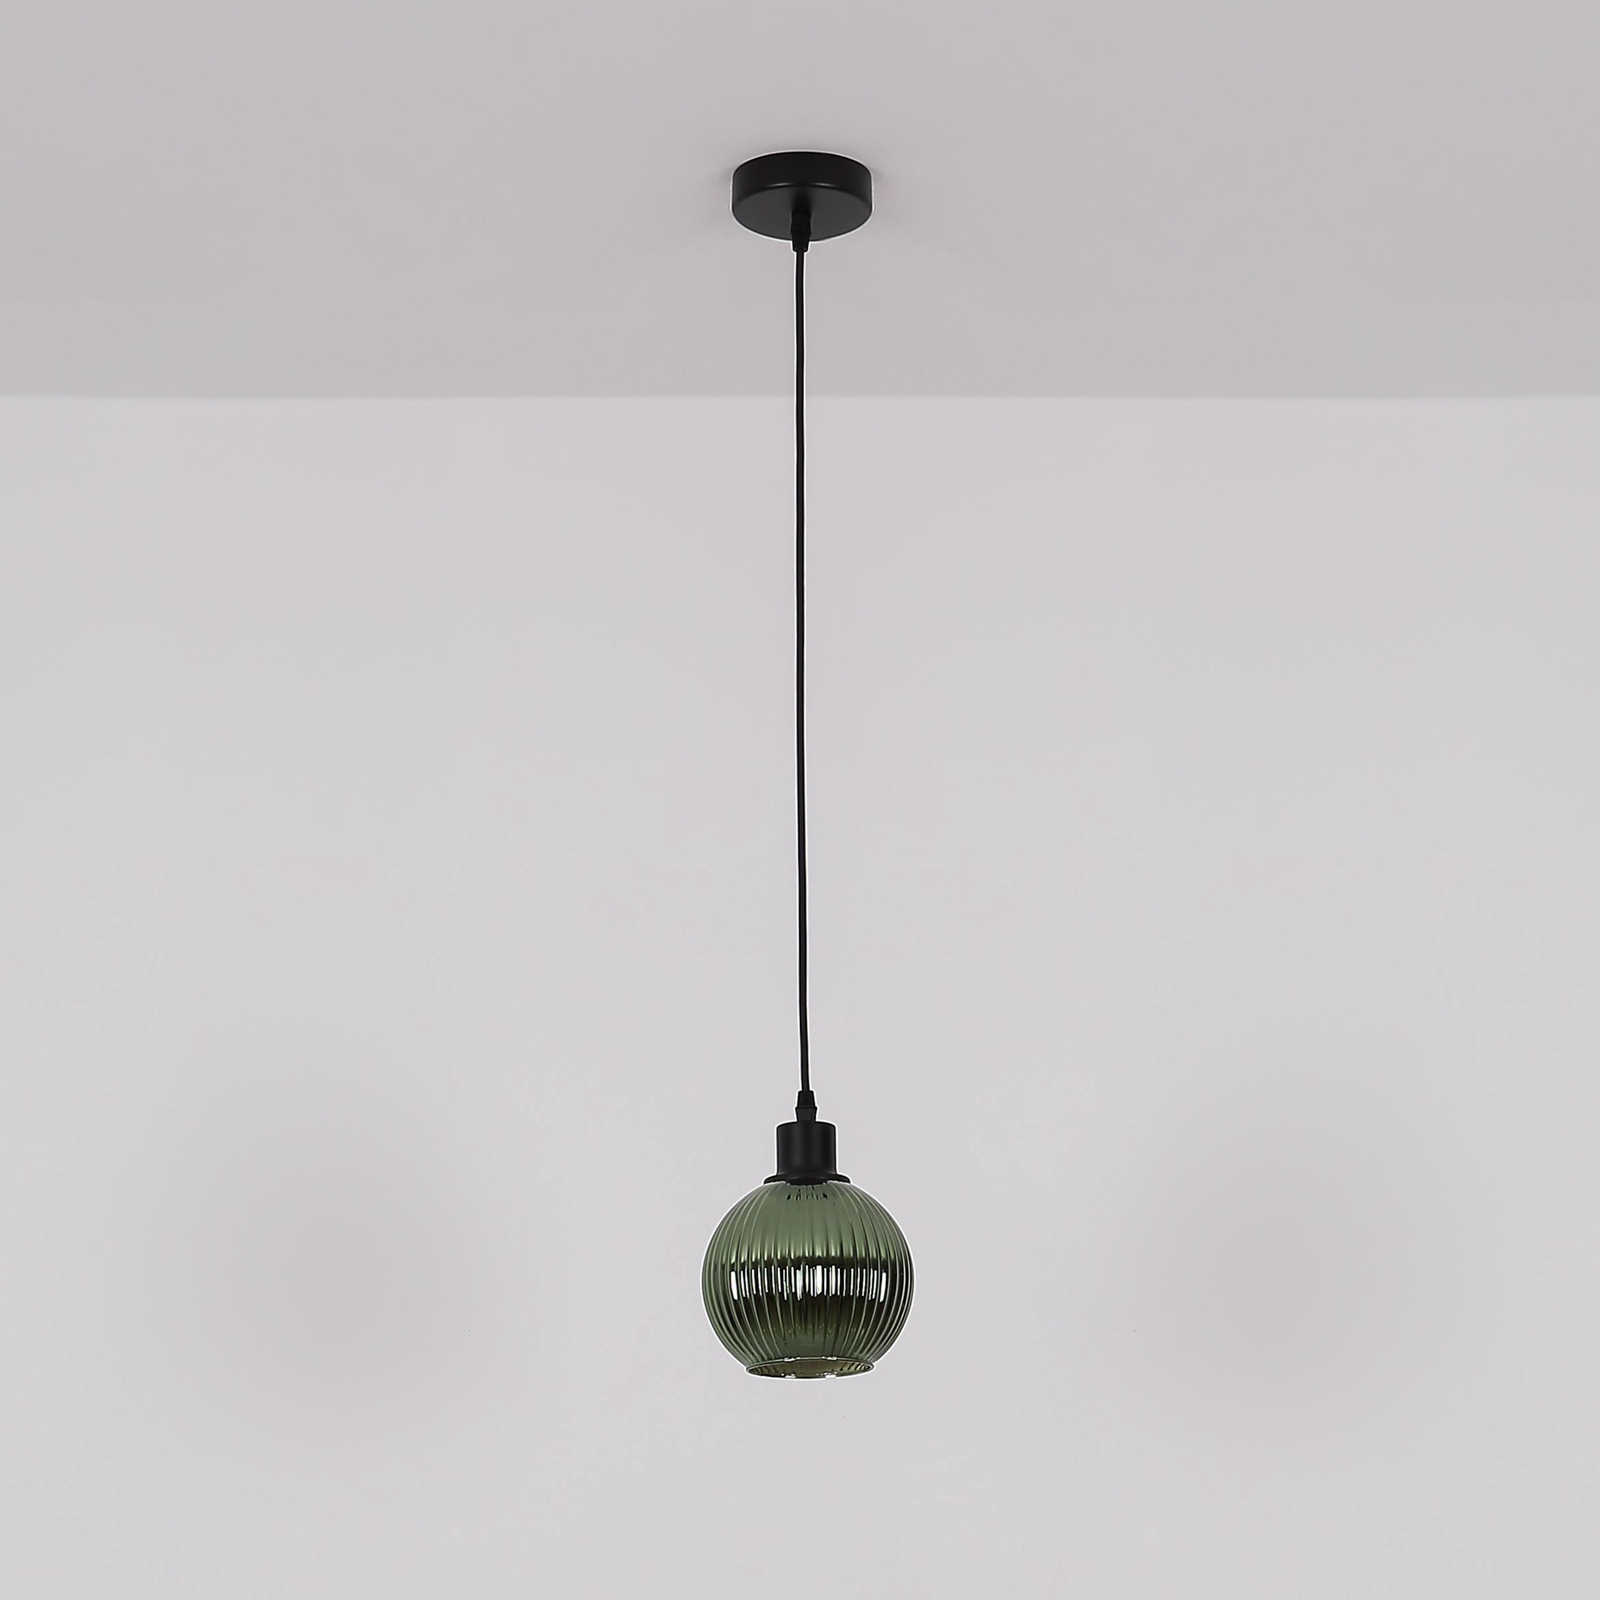 Lampa wisząca Zumba, zielona, Ø 15 cm, szkło